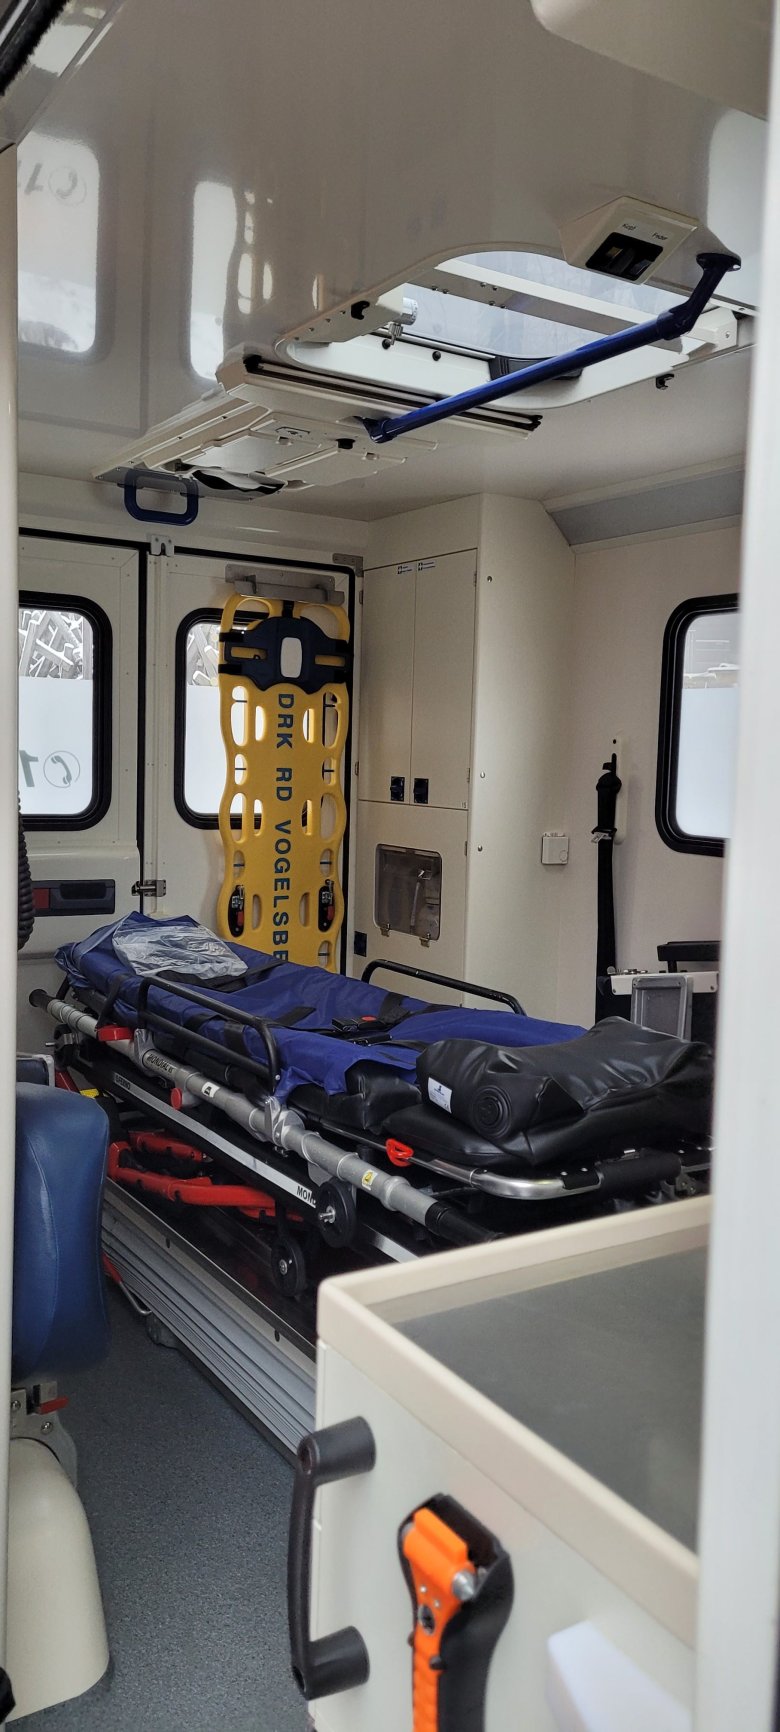 Innenaufnahme eines Rettungswagens. darauf ist unter anderem eine blaue und eine gelbe Trage zu sehen. Außerdem sieht man geschlossene Einbauschränke